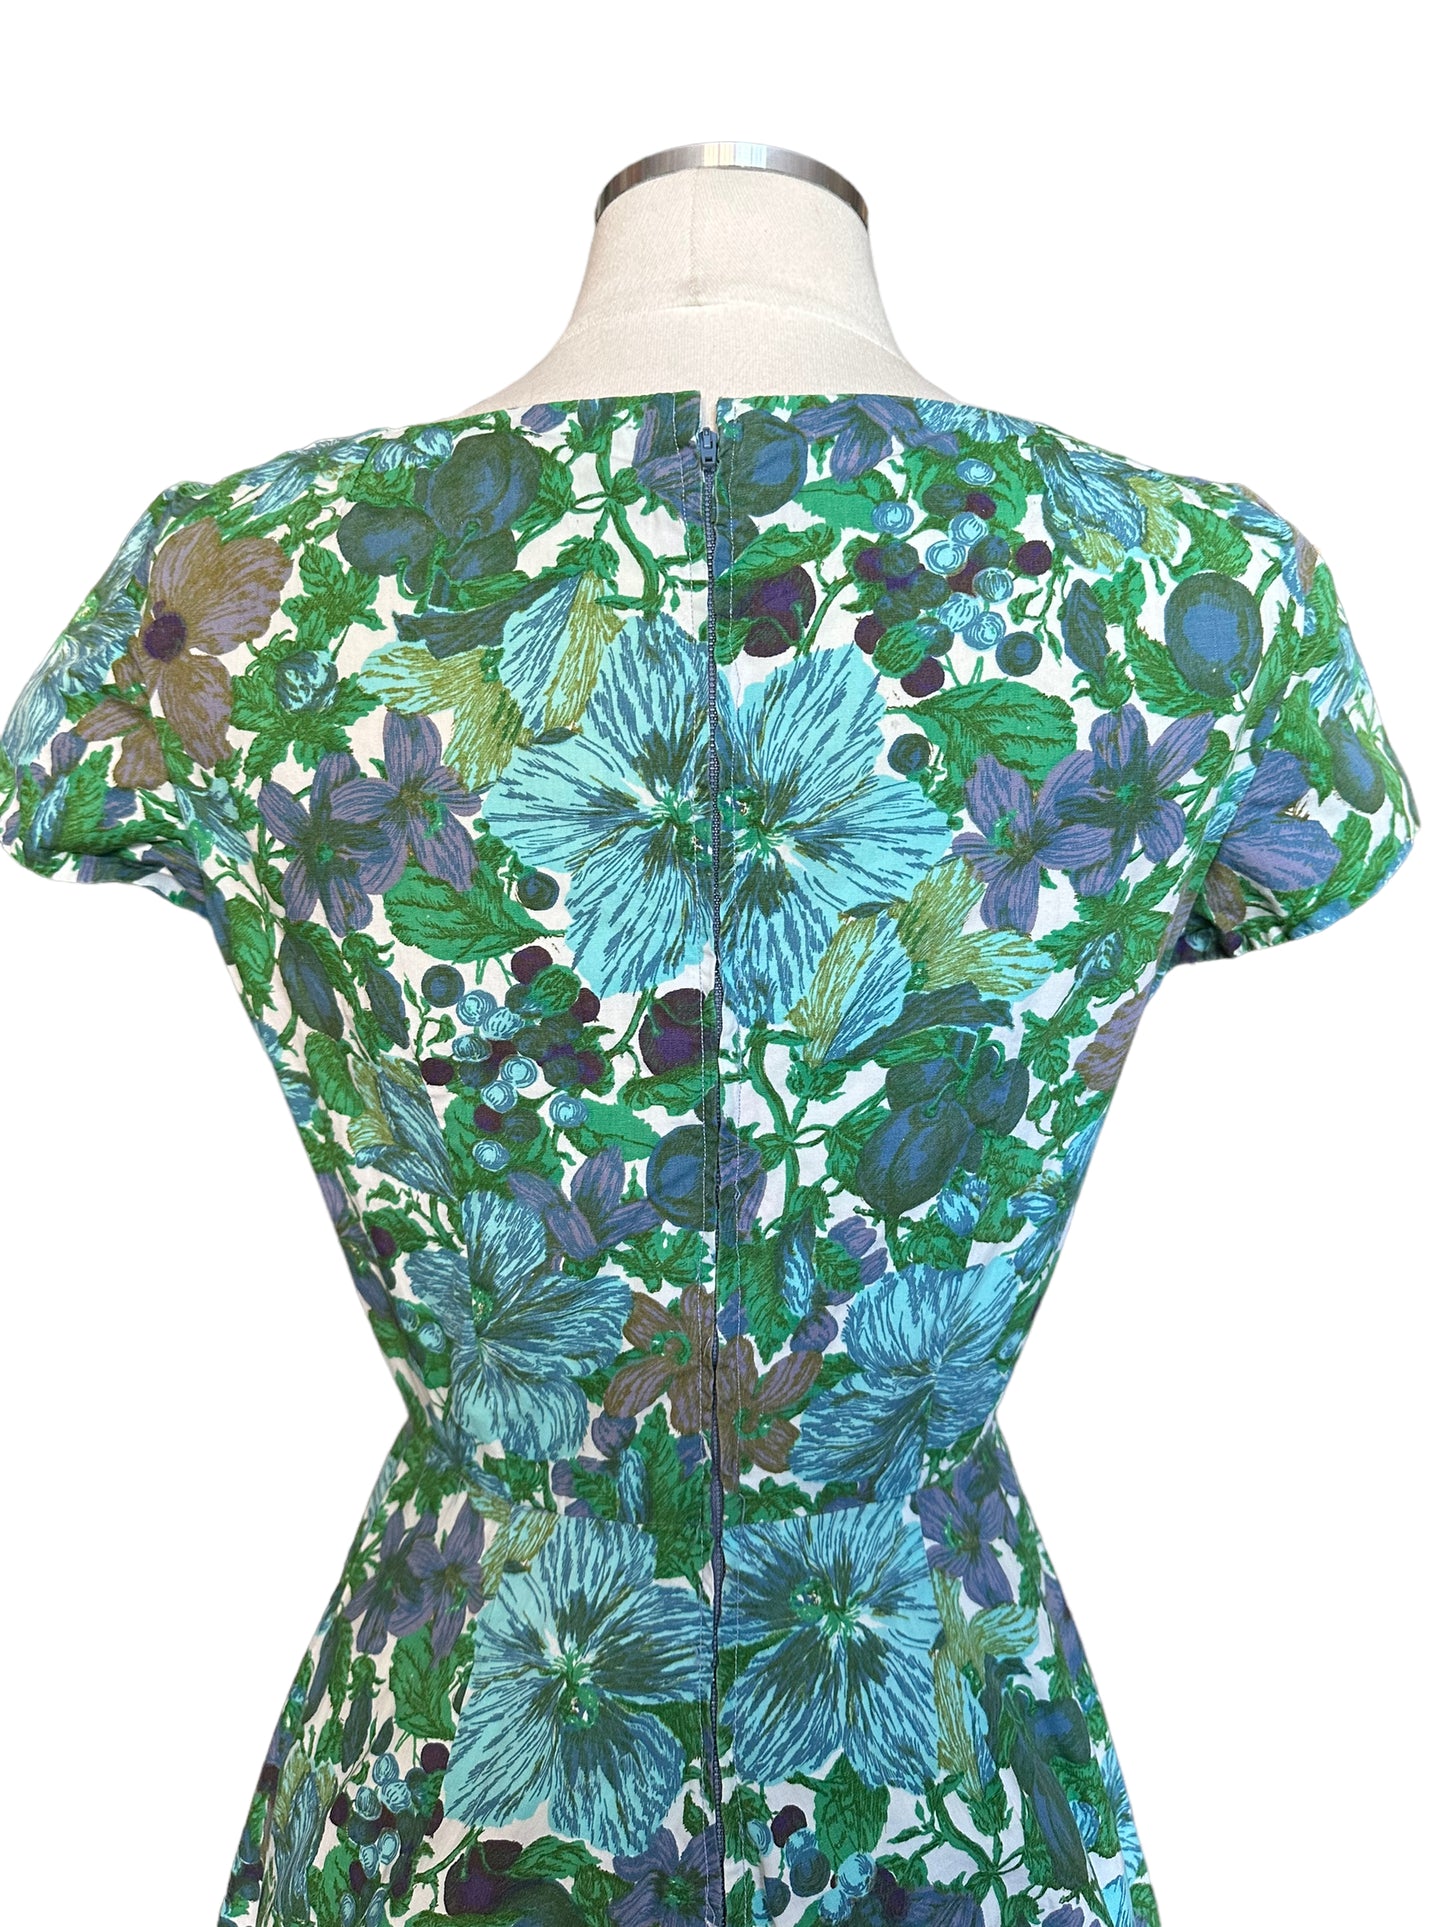 Back view of Vintage 1950s Blue Floral Cotton Dress |  Barn Owl True Vintage | Seattle Vintage Dresses